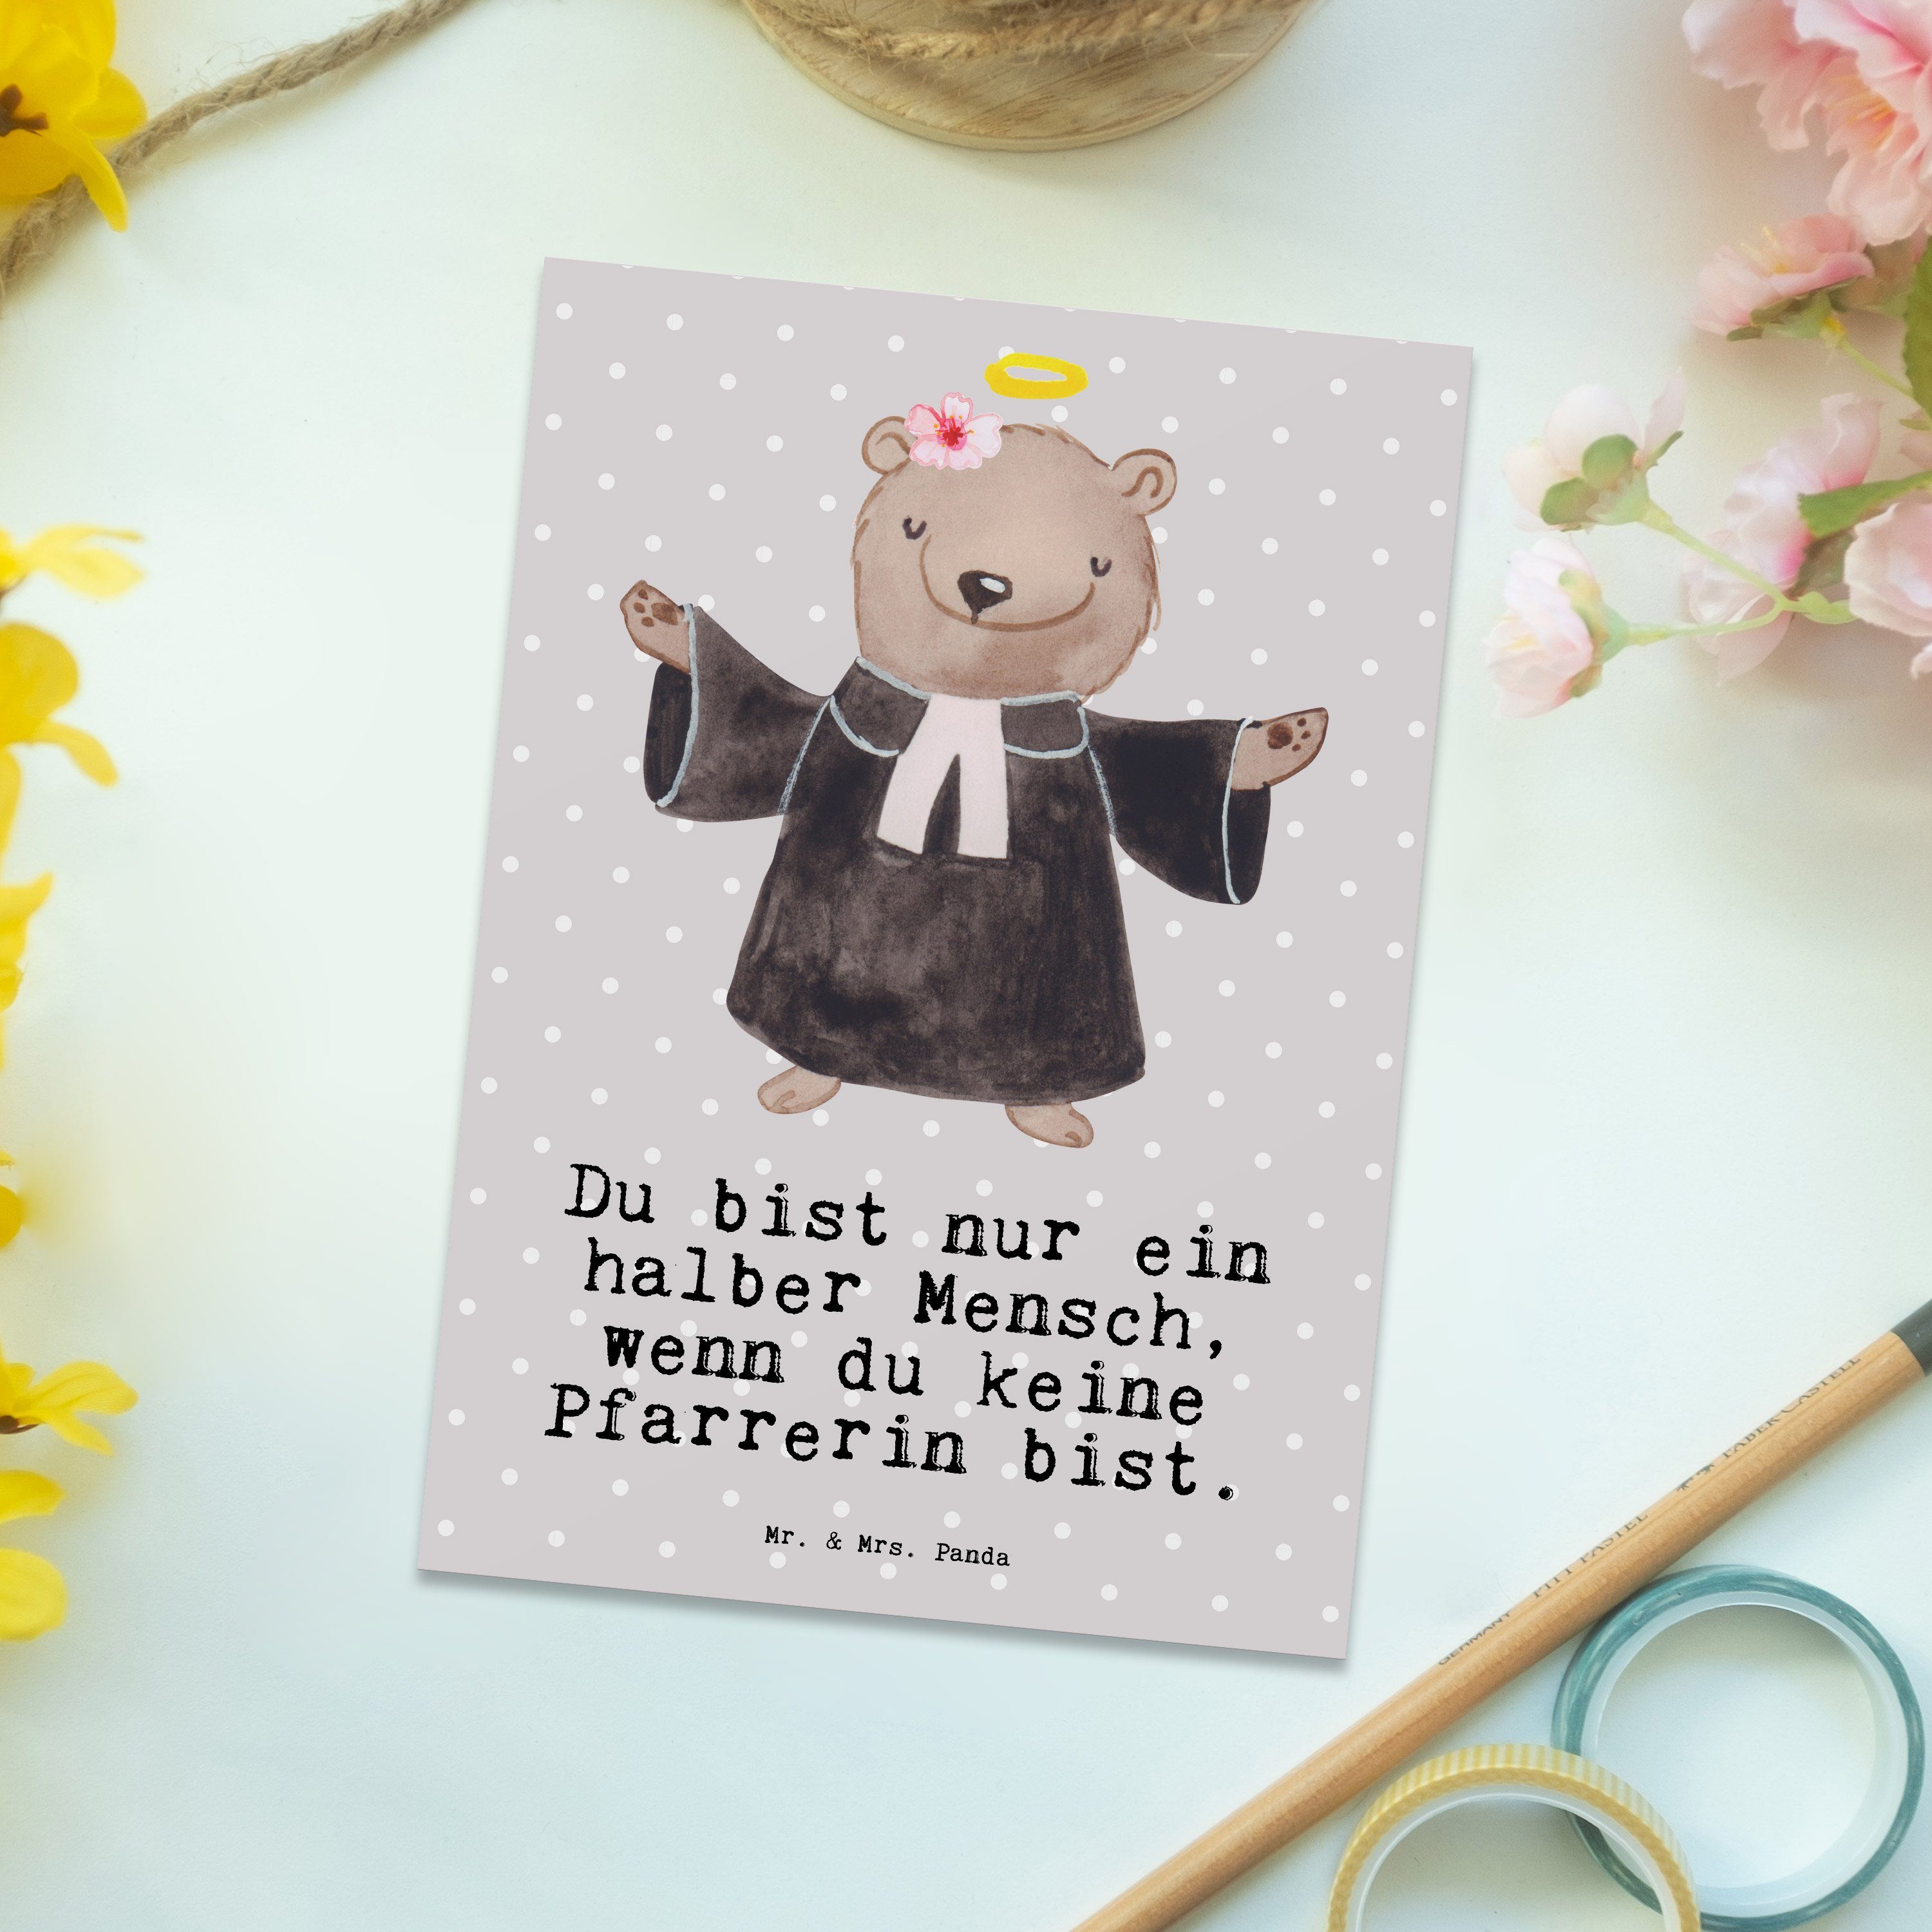 Mr. & Mrs. Panda Postkarte Pfarrerin mit Herz - Grau Pastell - Geschenk, Karte, Rente, Geburtsta